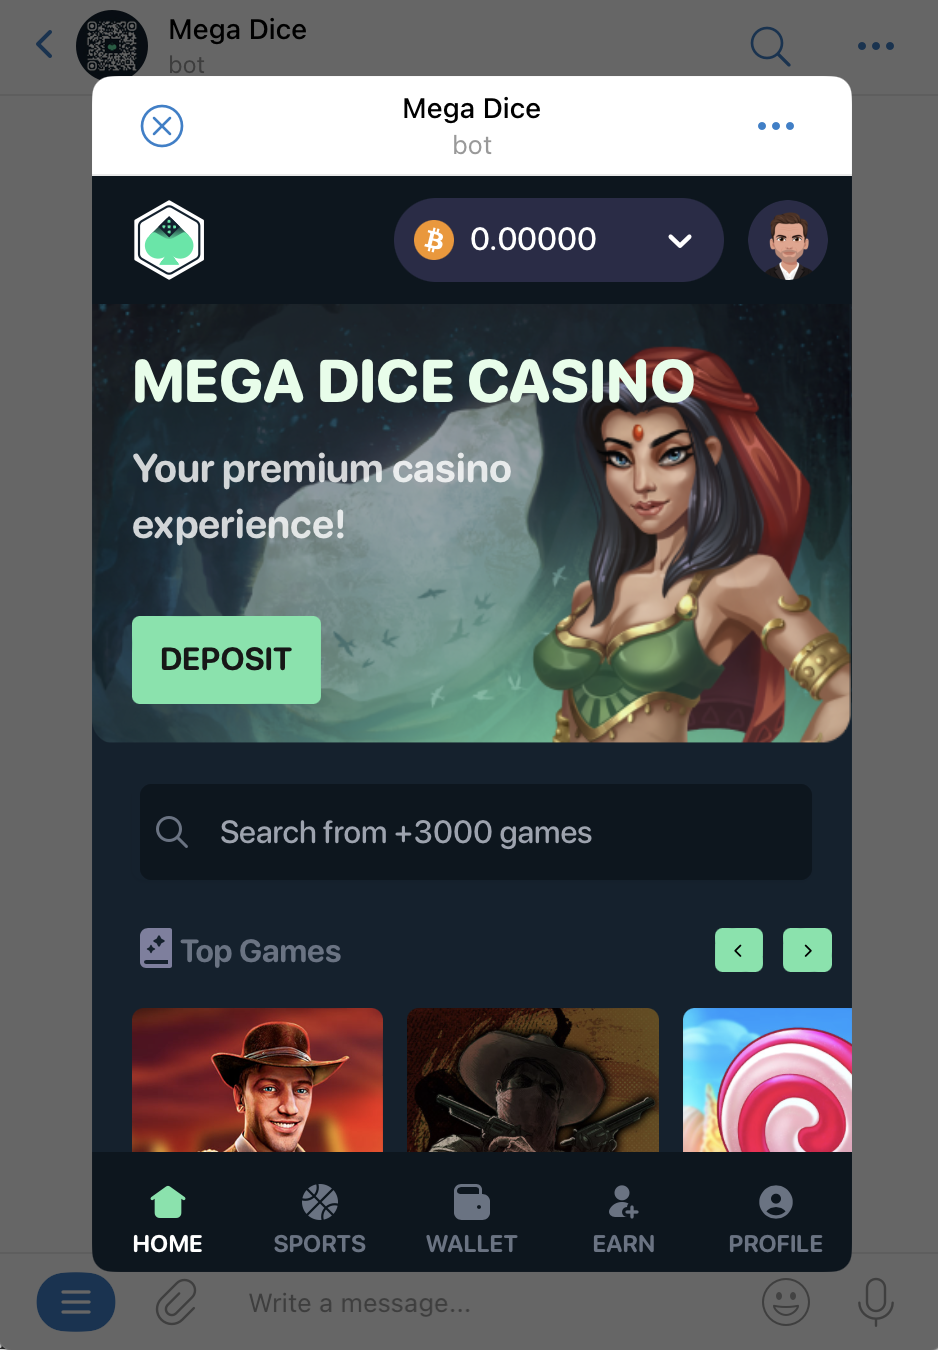 Mega Dice Telegram casino review 